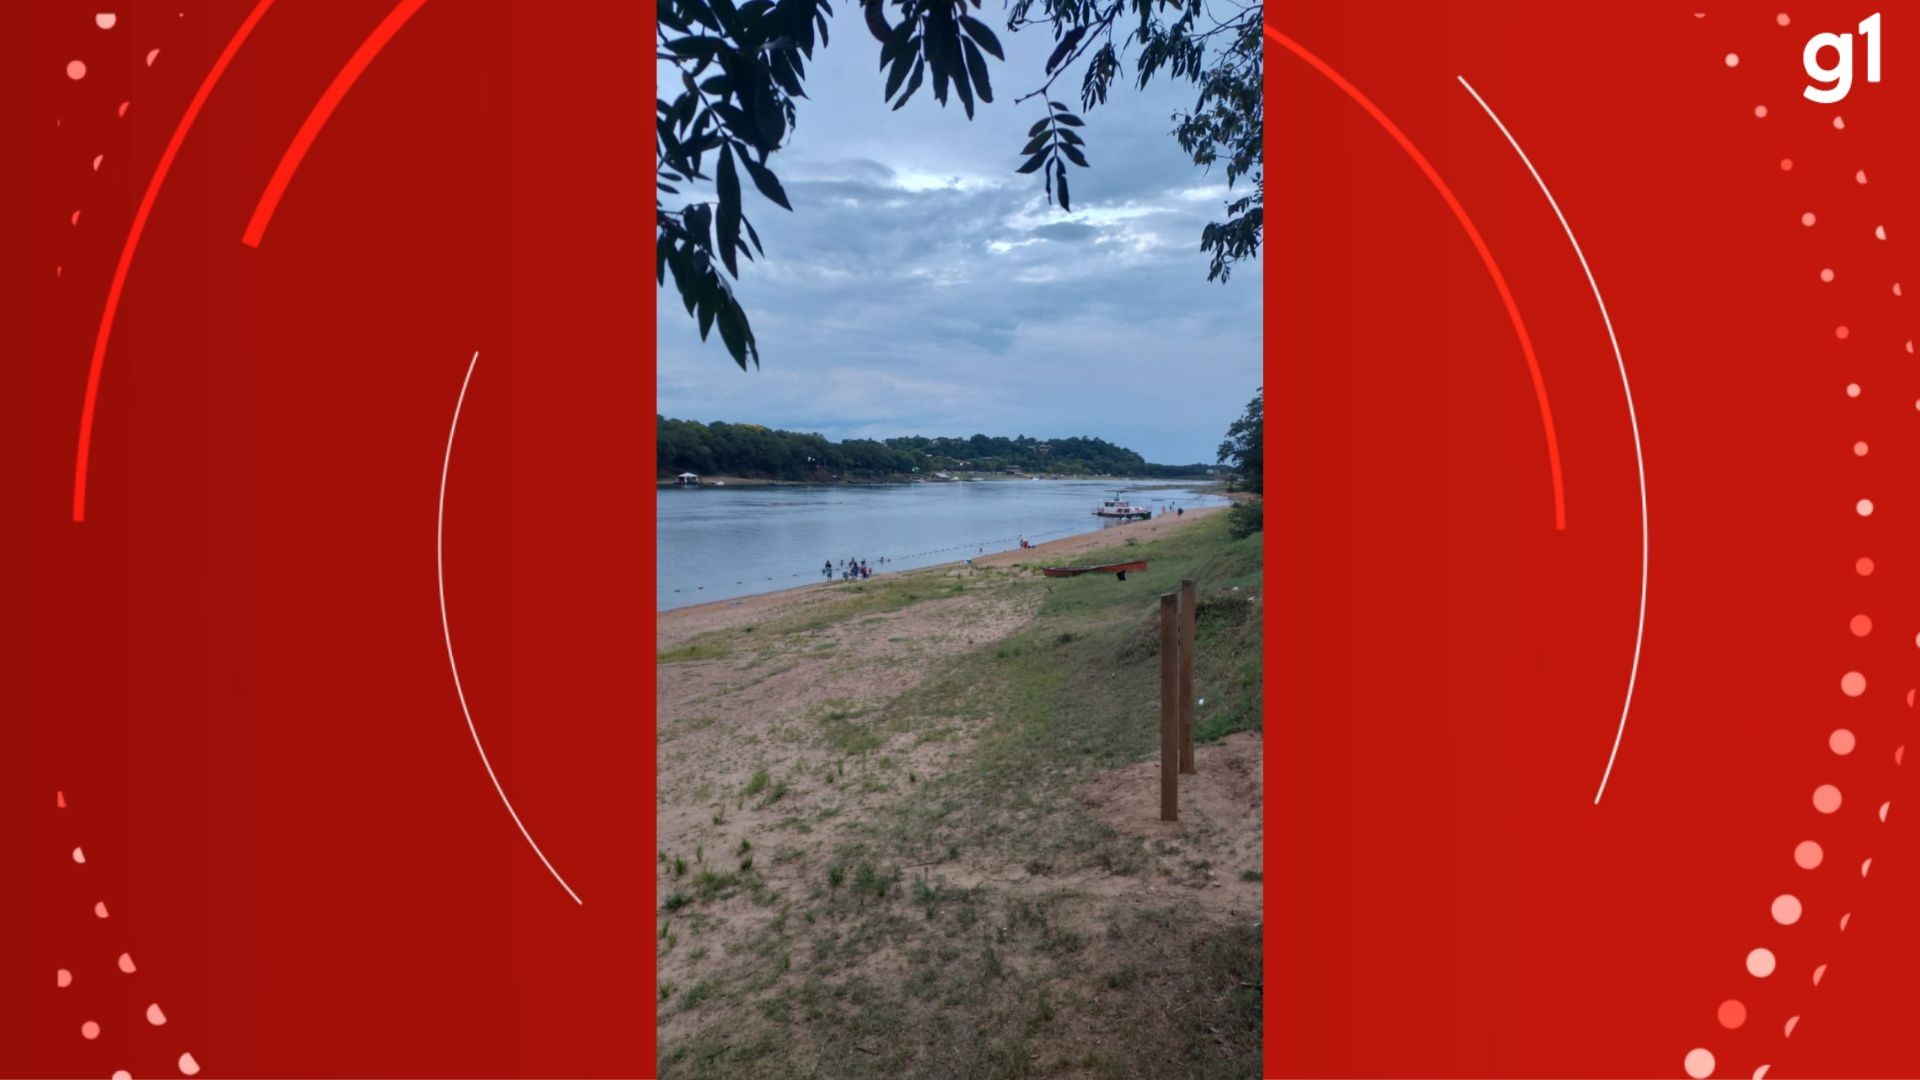 Adolescente morre afogado ao tentar fazer travessia do Rio Jacuí, diz Corpo de Bombeiros